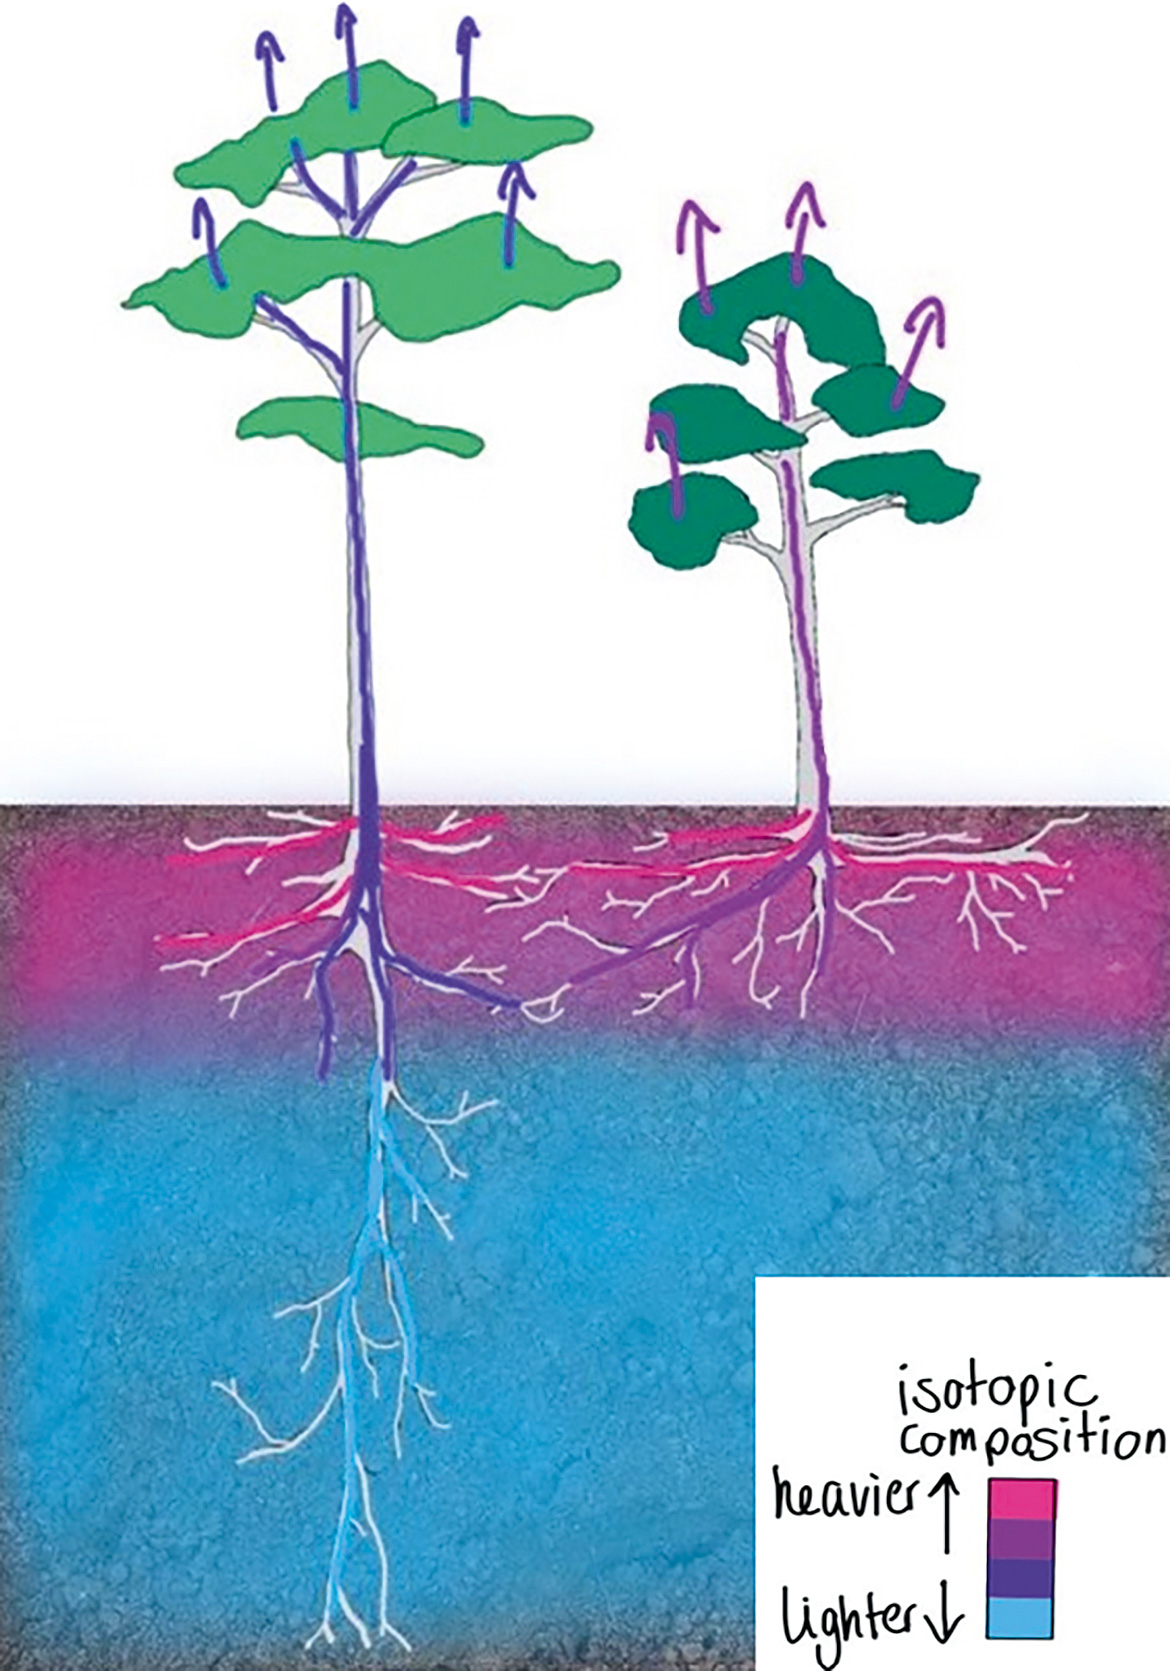 In der Grafik nimmt je ein Baum mit tiefen und flachen Wurzeln Wasser aus dem Boden auf. Die unterschiedlichen Isotopenwerte sind farblich markiert.